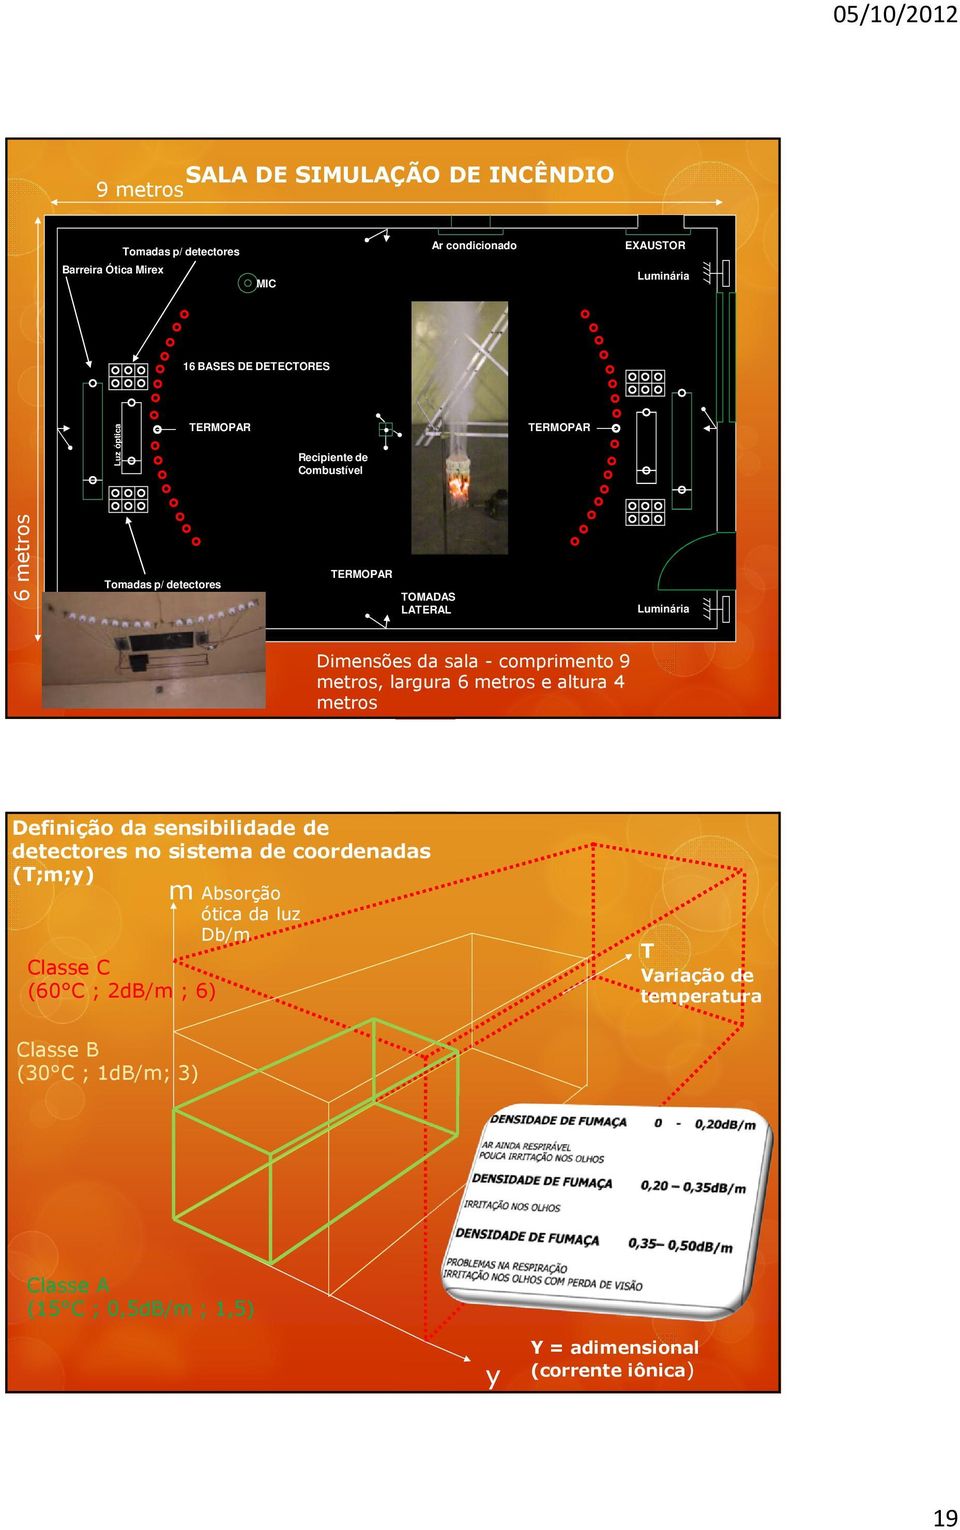 9 metros, largura 6 metros e altura 4 metros Definição da sensibilidade de detectores no sistema de coordenadas (T;m;y) m Absorção ótica da luz Db/m